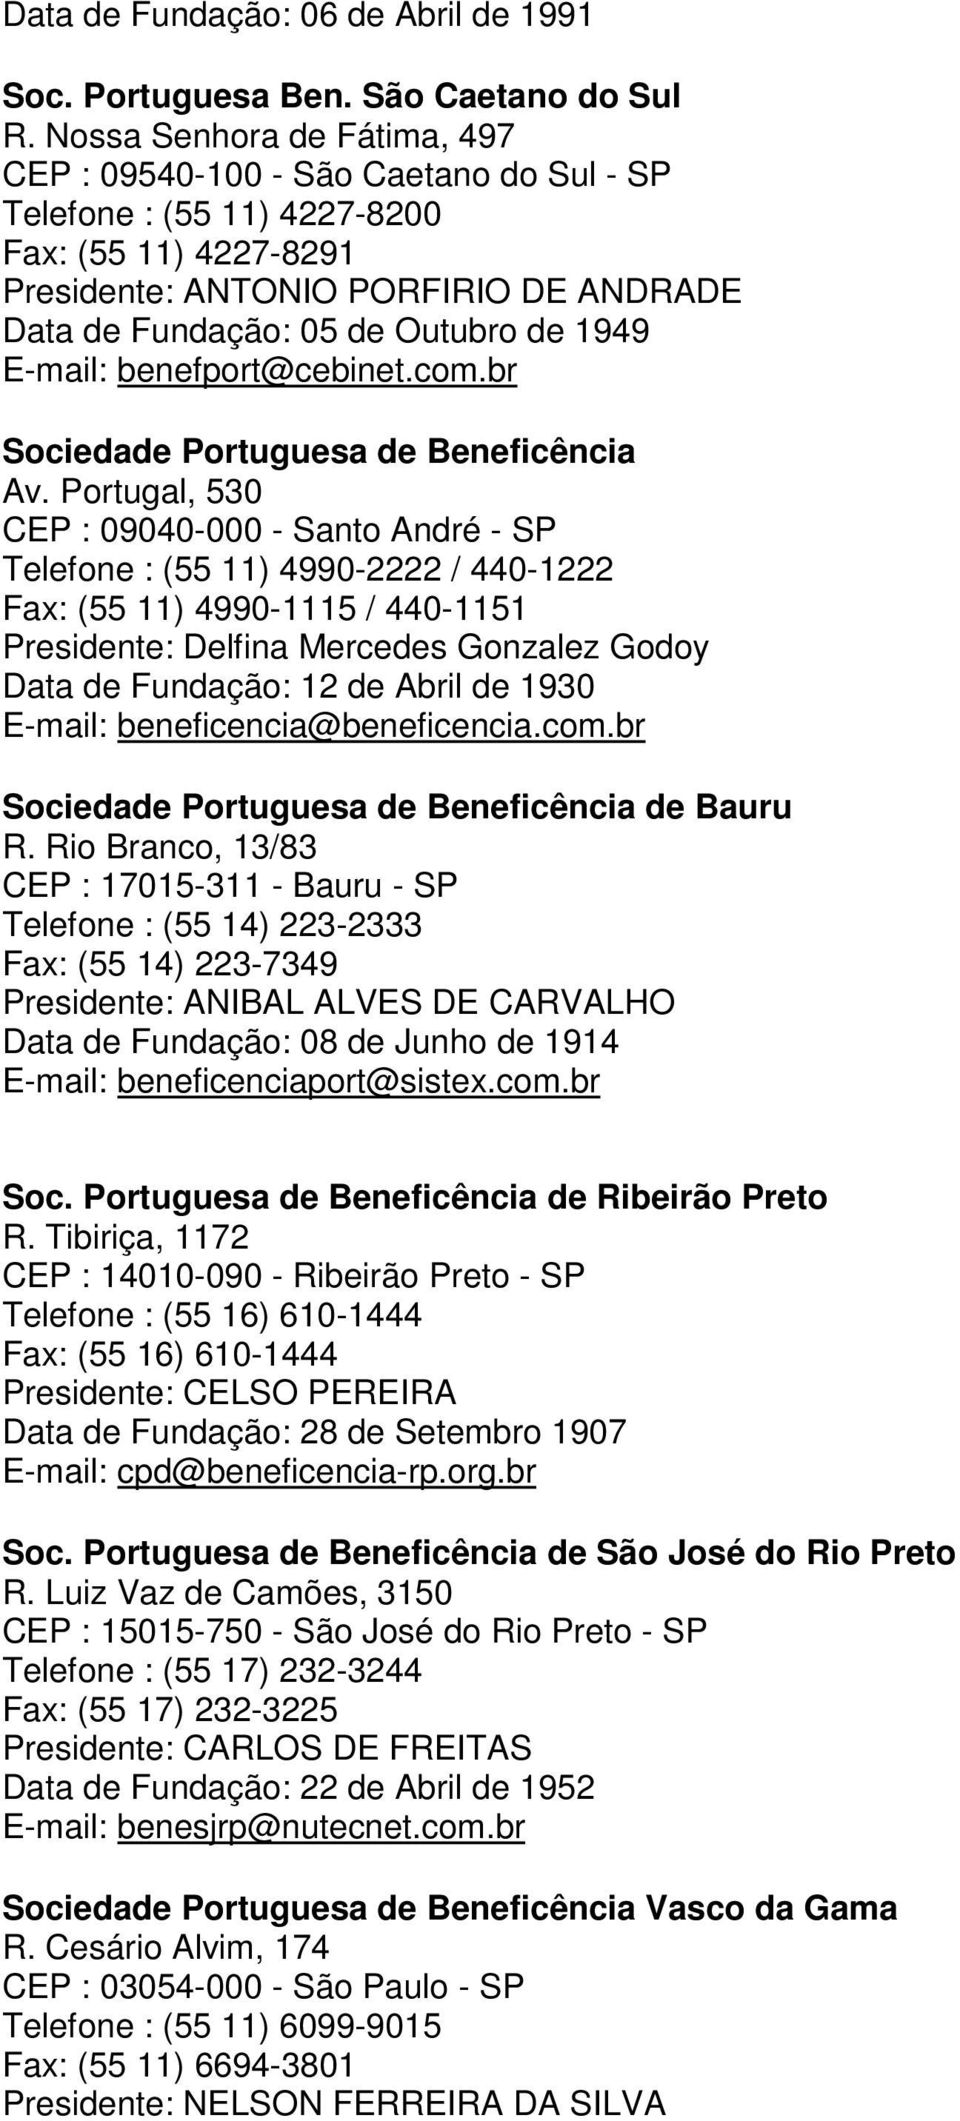 1949 E-mail: benefport@cebinet.com.br Sociedade Portuguesa de Beneficência Av.